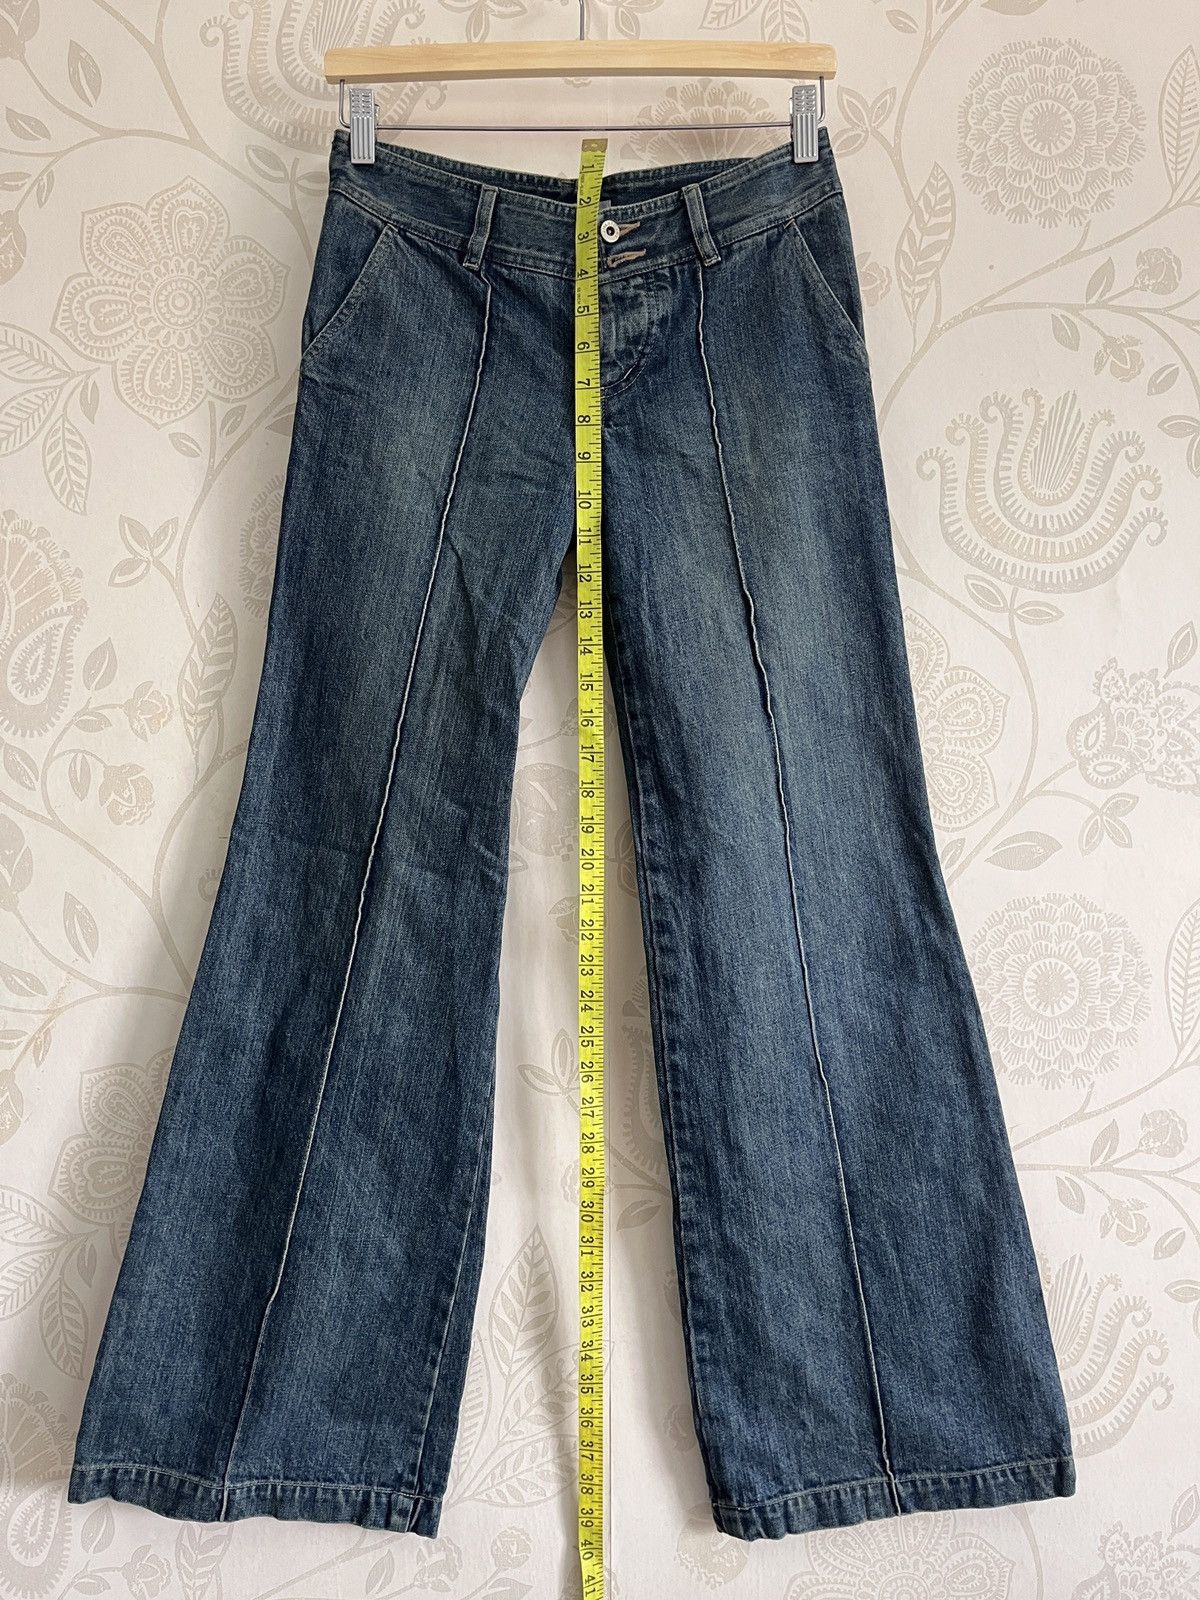 Jil Stuart - Jill Stuart Flare Boot Cut Classic Denim Jeans - 2